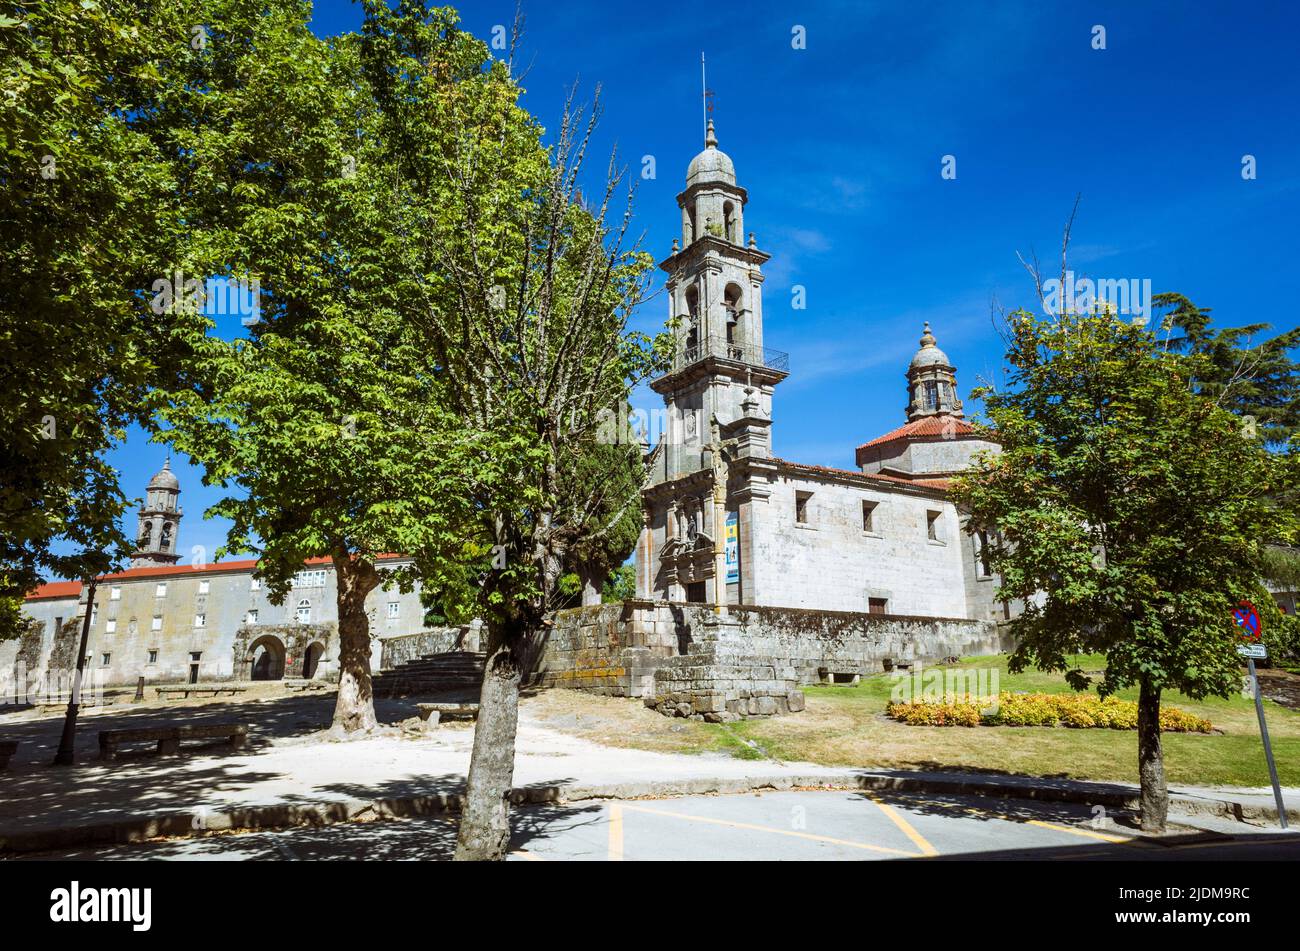 Allariz, provincia de Ourense, Galicia, España : Iglesia barroca de San Benito. Foto de stock